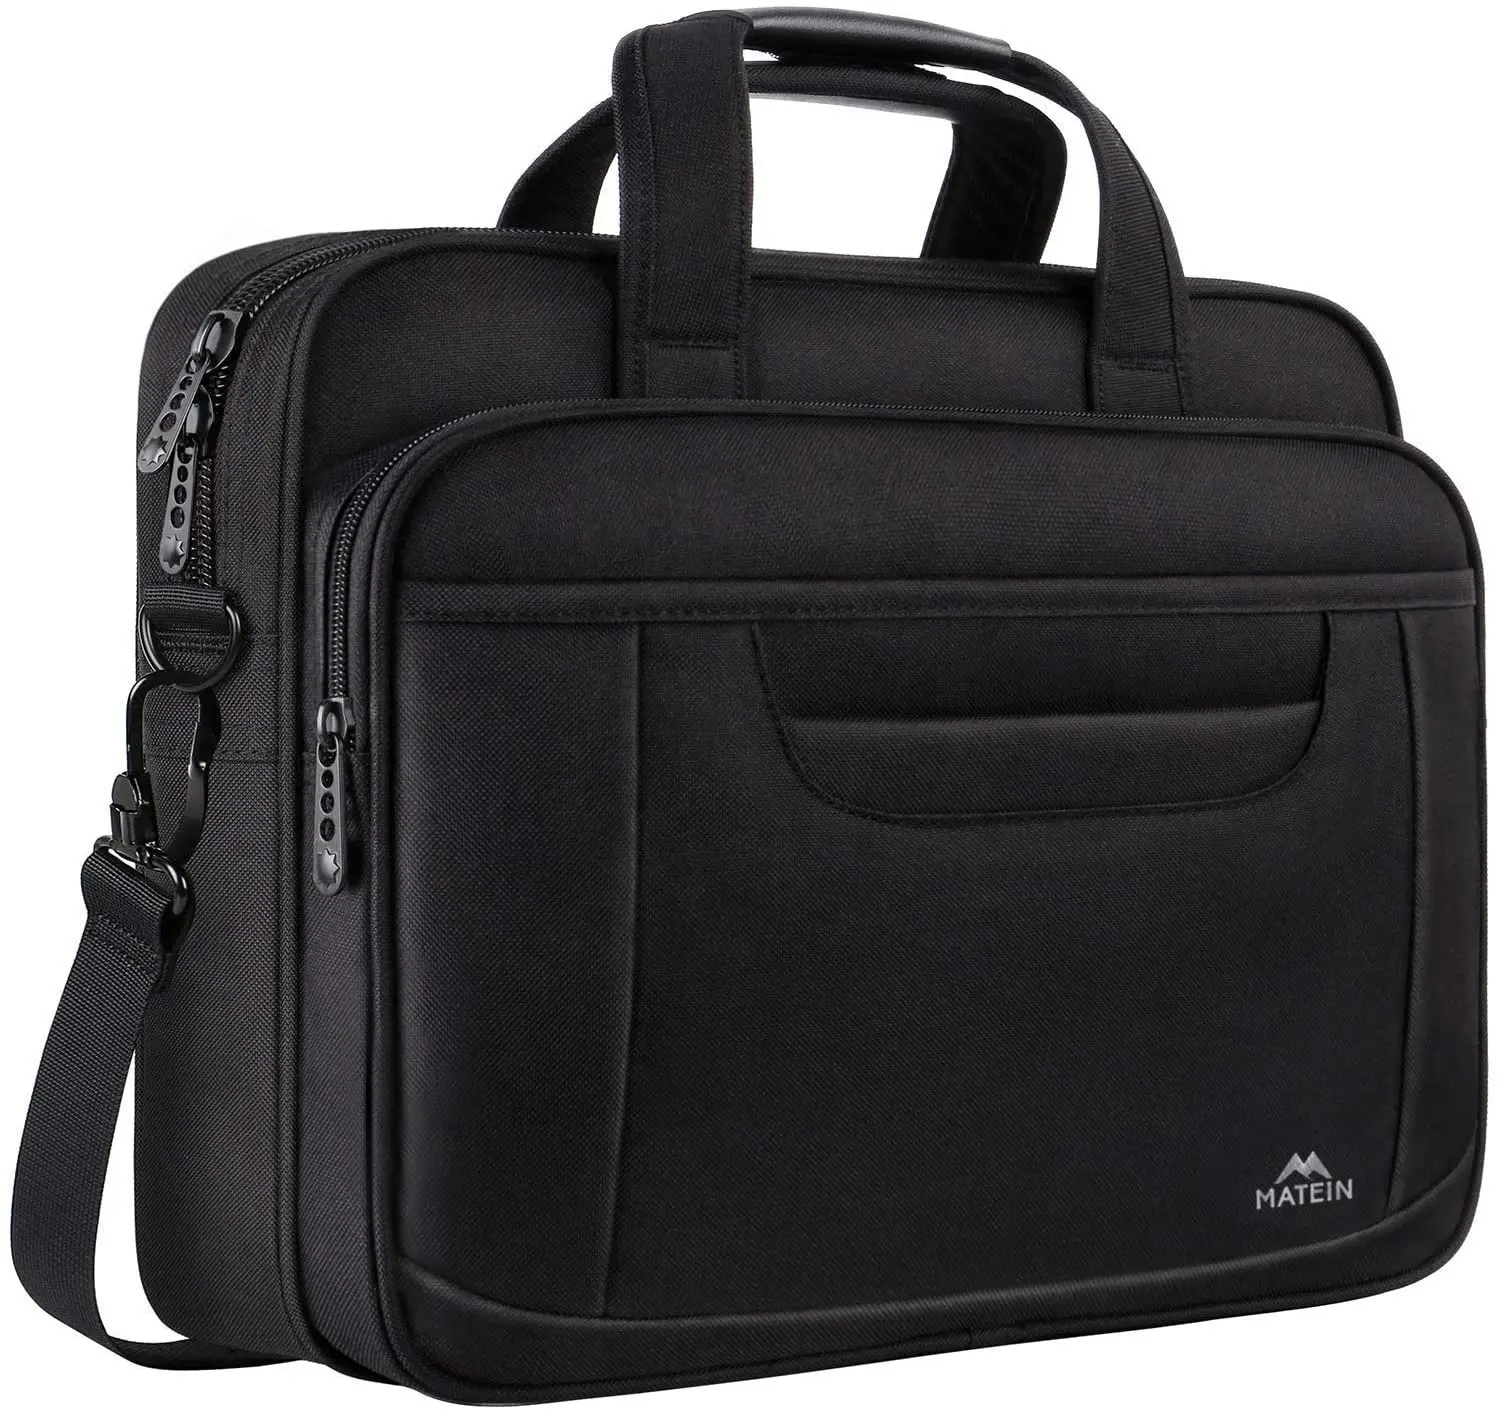 Mejor Amazon attache azul de gama alta hombre maletín equipaje marcas GQ computadora bolsa caso definición llevar en tipos delgados de maletín